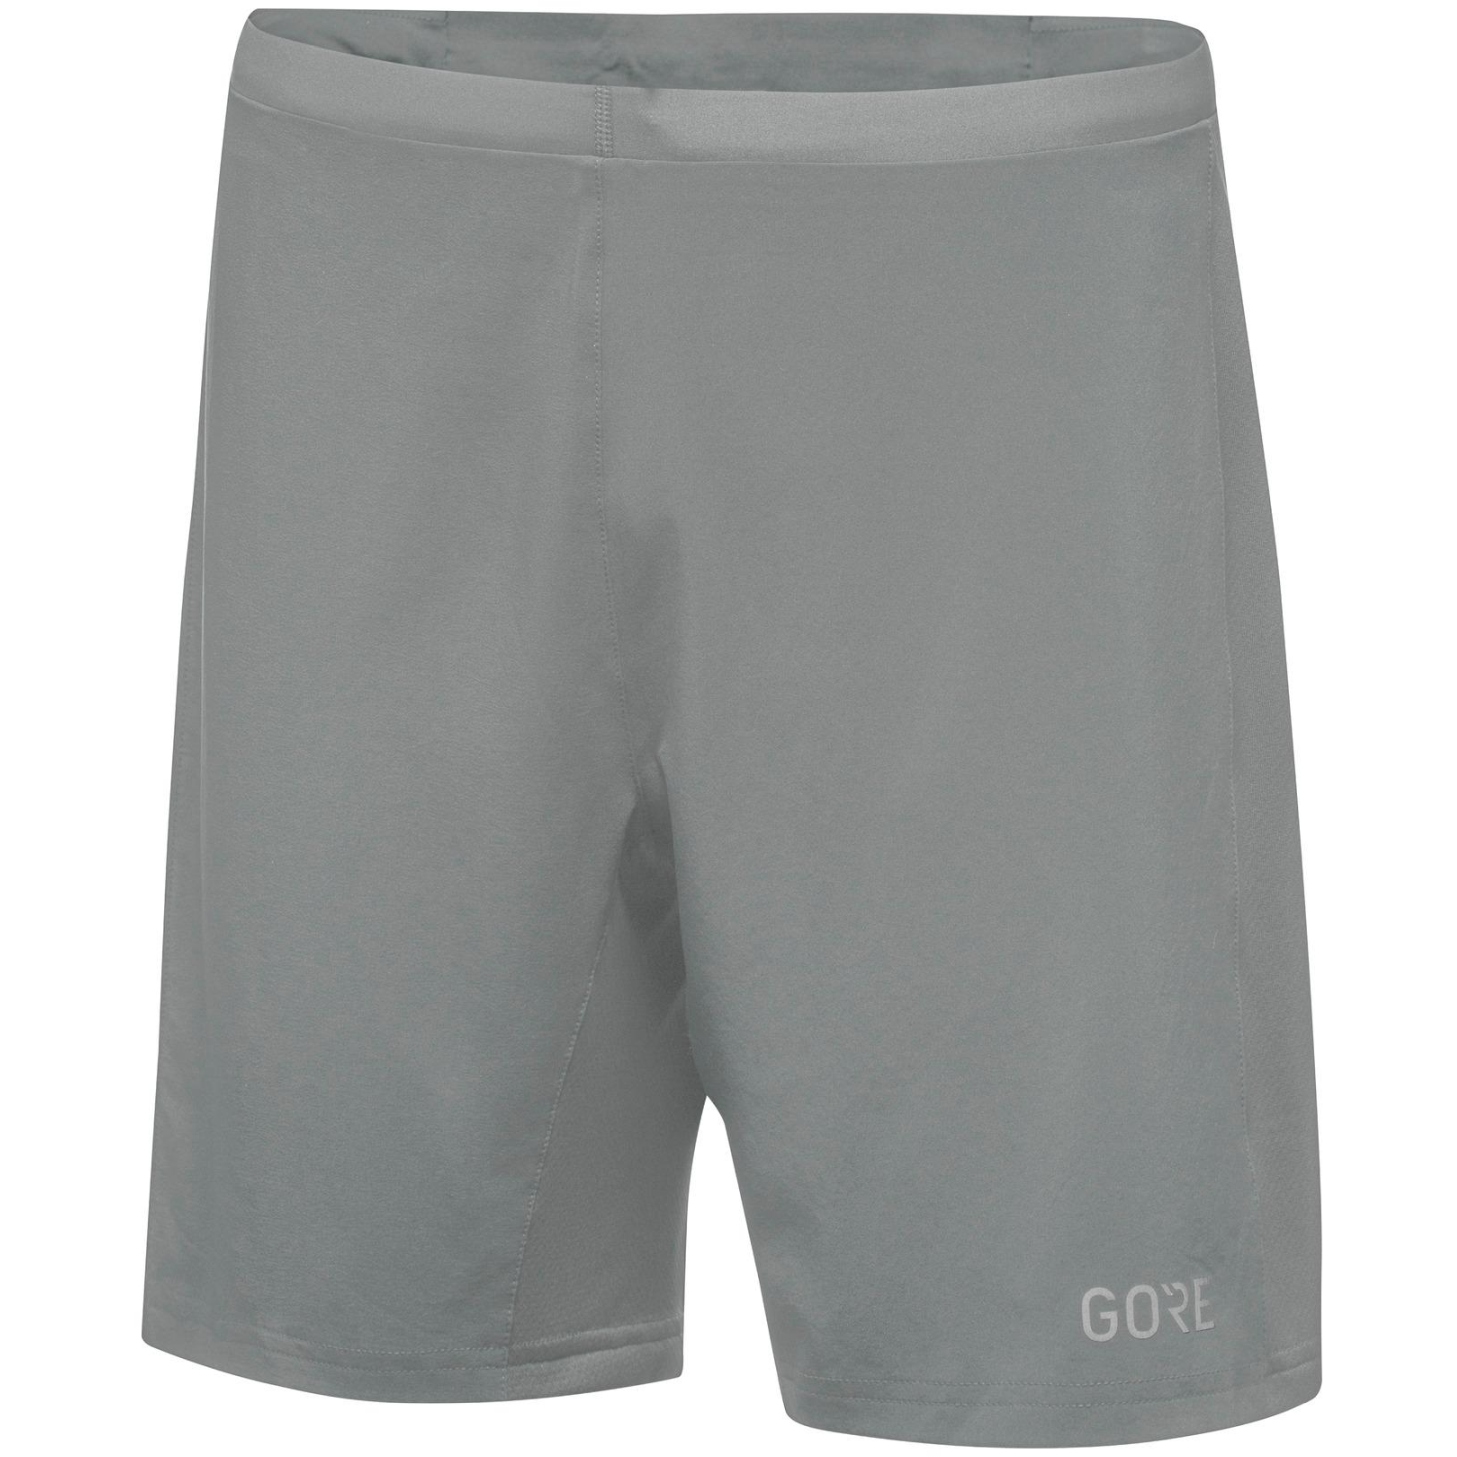 Immagine prodotto da GOREWEAR Pantaloncini Uomo - R5 2in1 - lab gray BF00